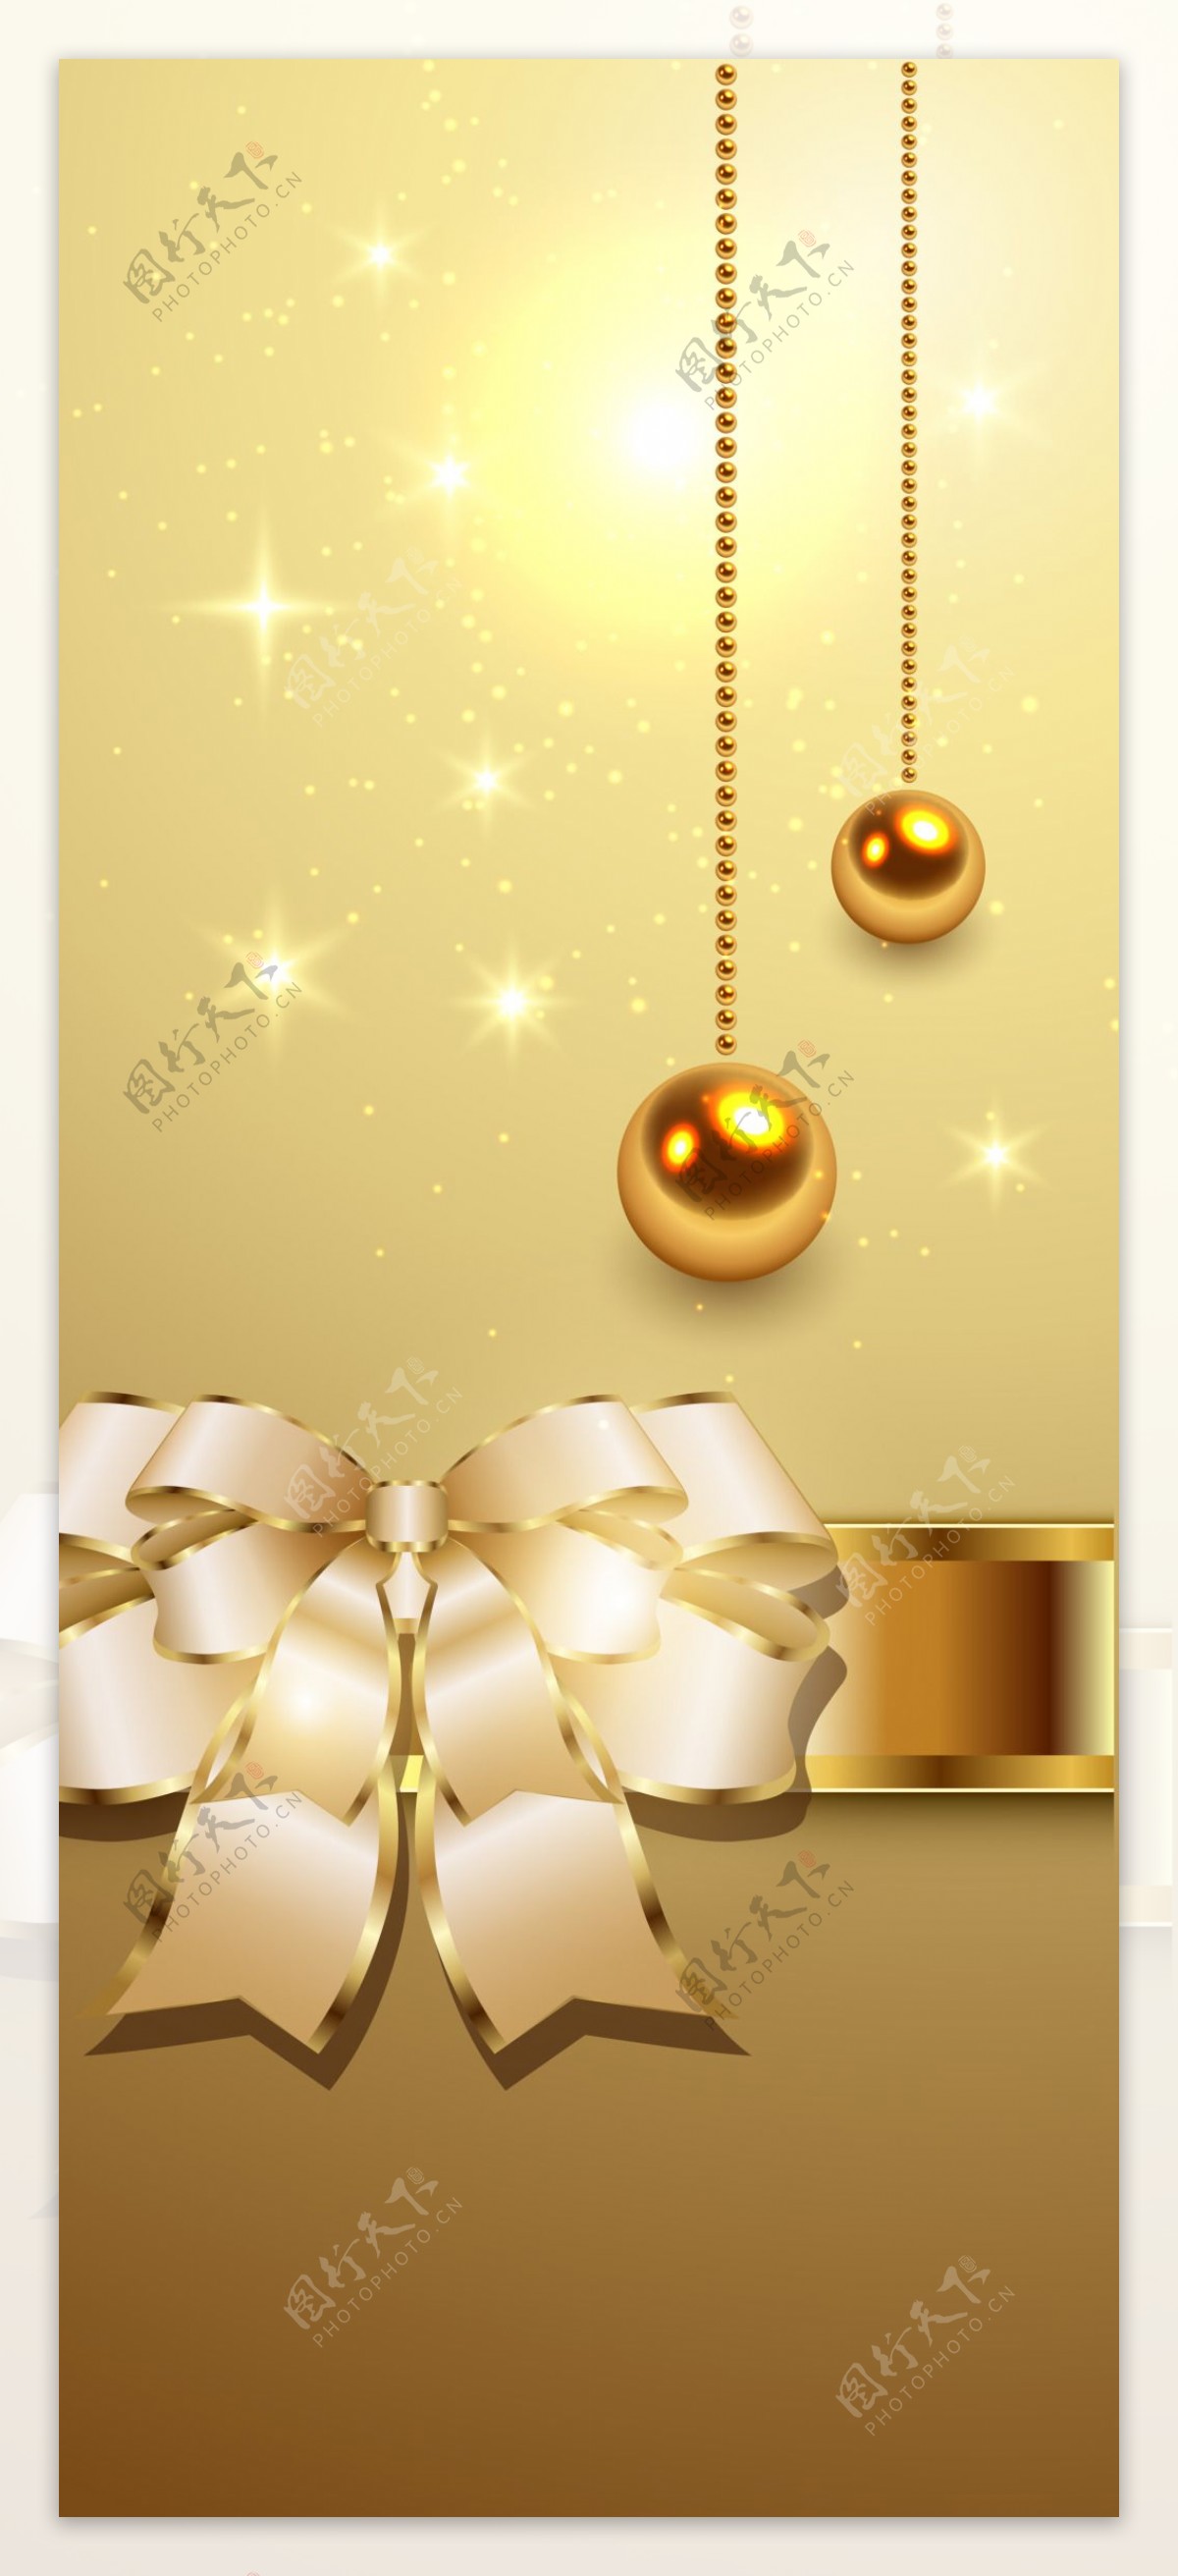 矢量金色圣诞球蝴蝶结背景素材